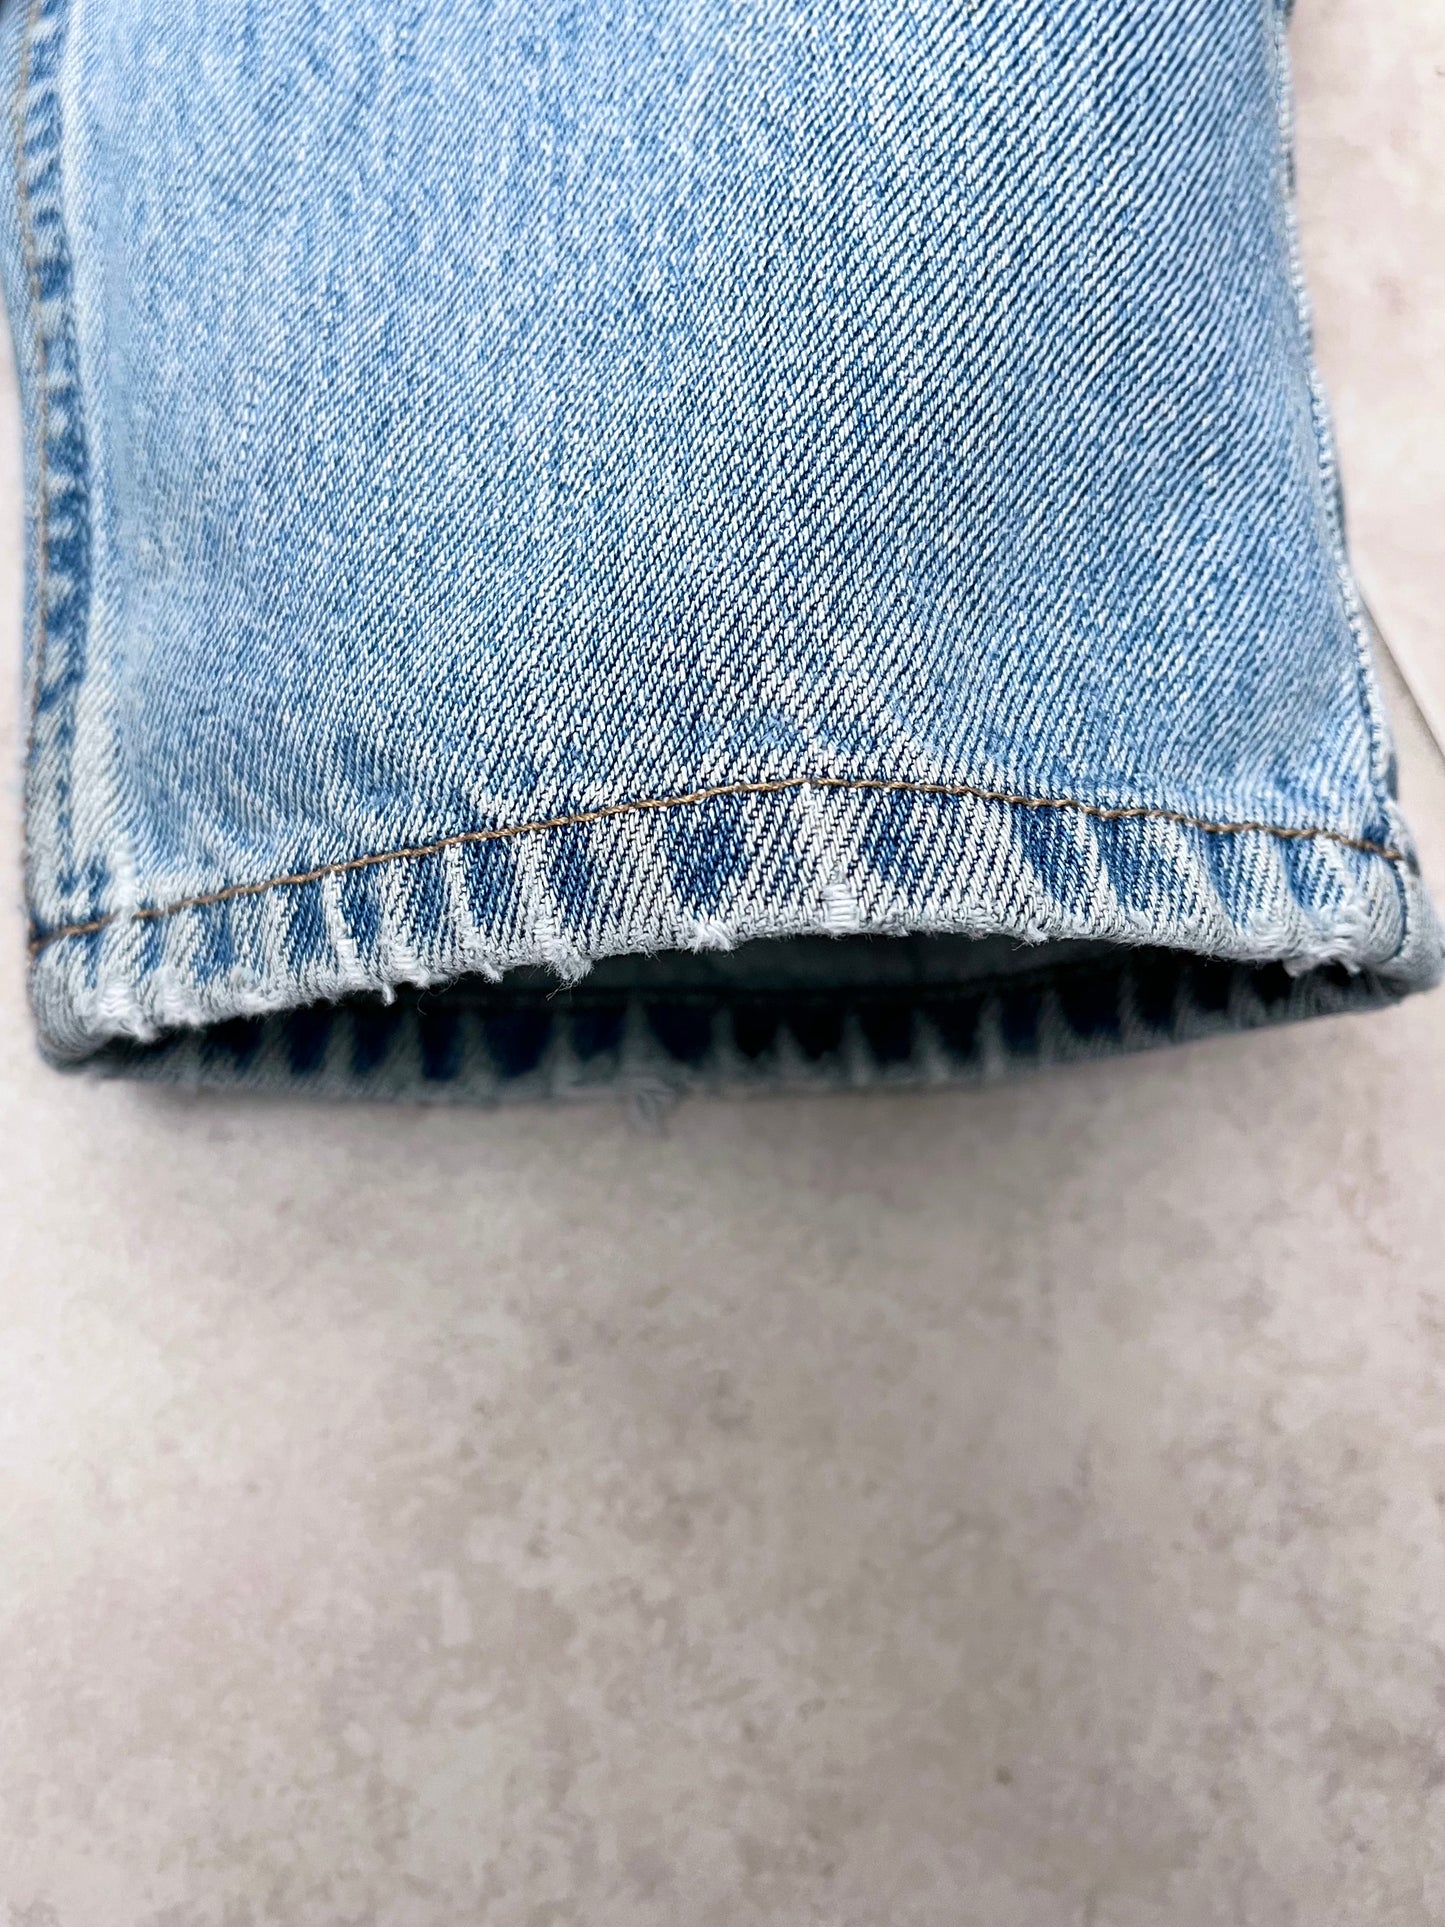 LEVIS 560 comfort fit jeans (32/32)